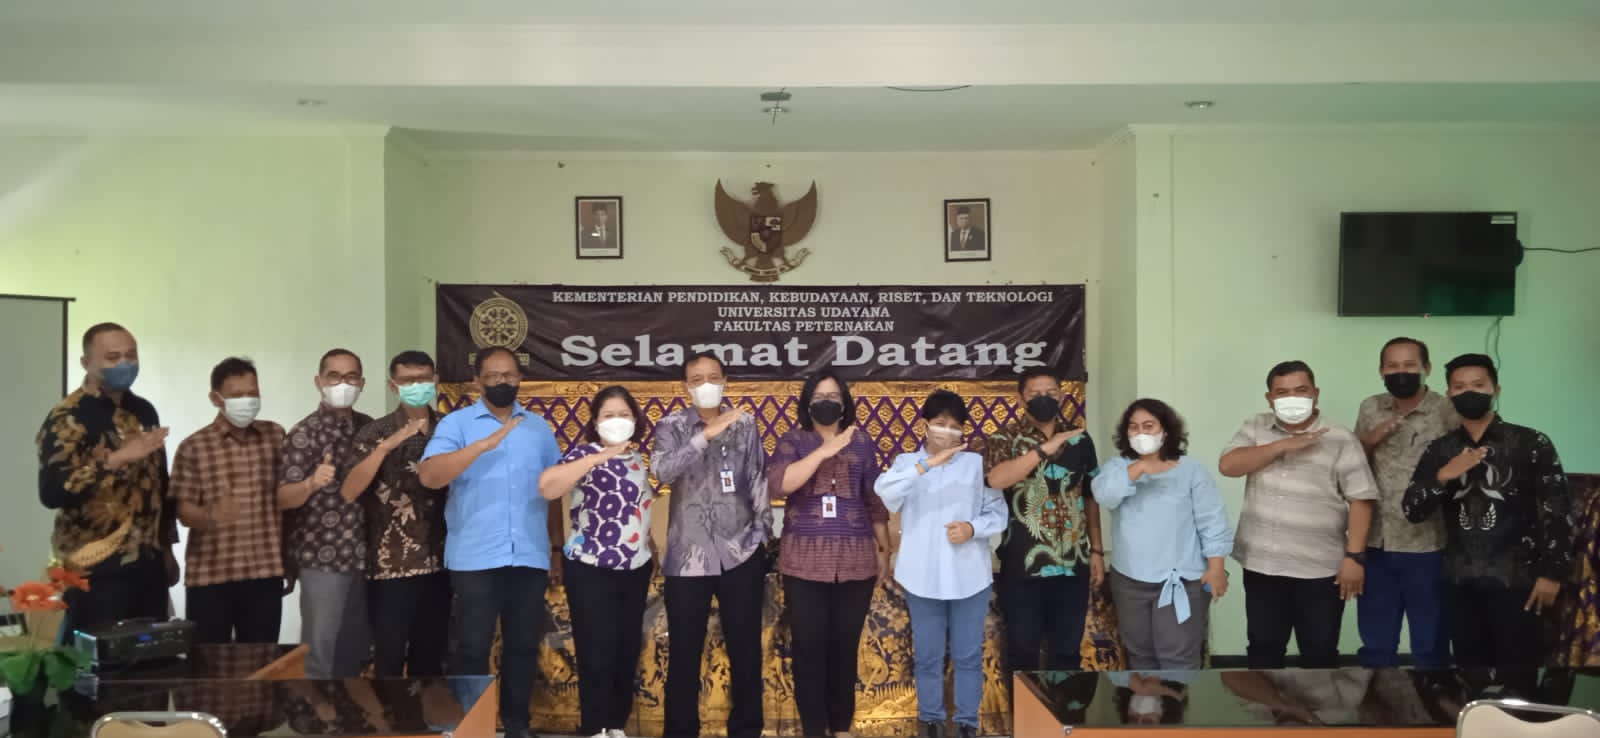 Fapet Unud Menerima Kunjungan Dari Tim Charoen Pokphand Indonesia (CPI) Pusat